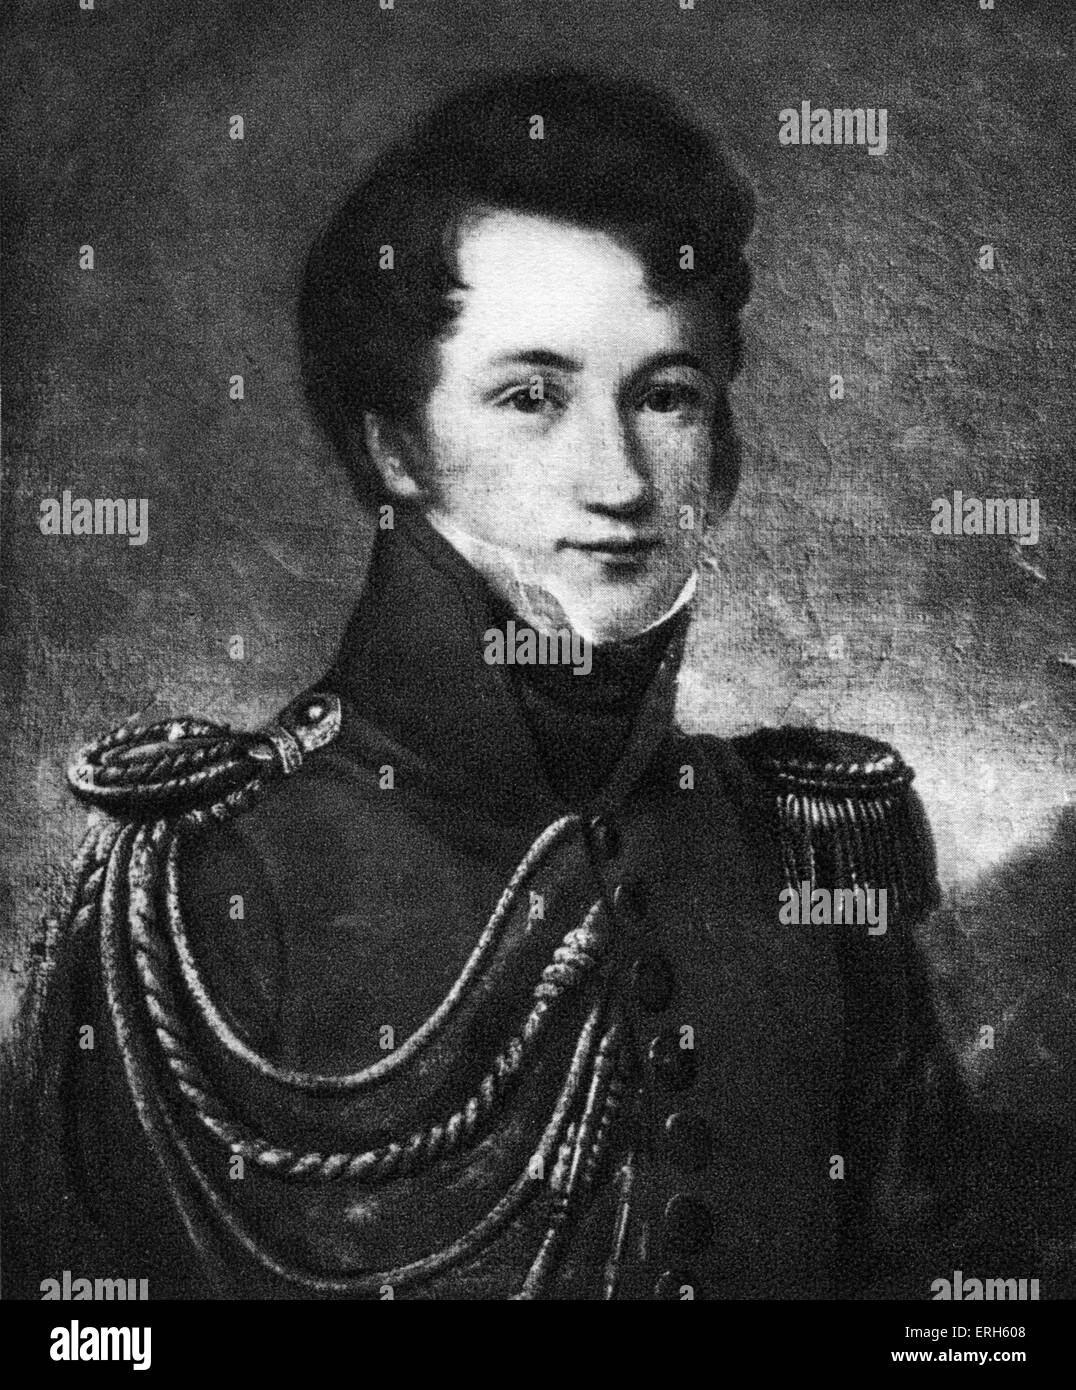 Alfred de Vigny - ritratto di artista sconosciuto. Poeta francese, drammaturgo e romanziere, 27 marzo 1797 - 17 settembre 1863. Foto Stock